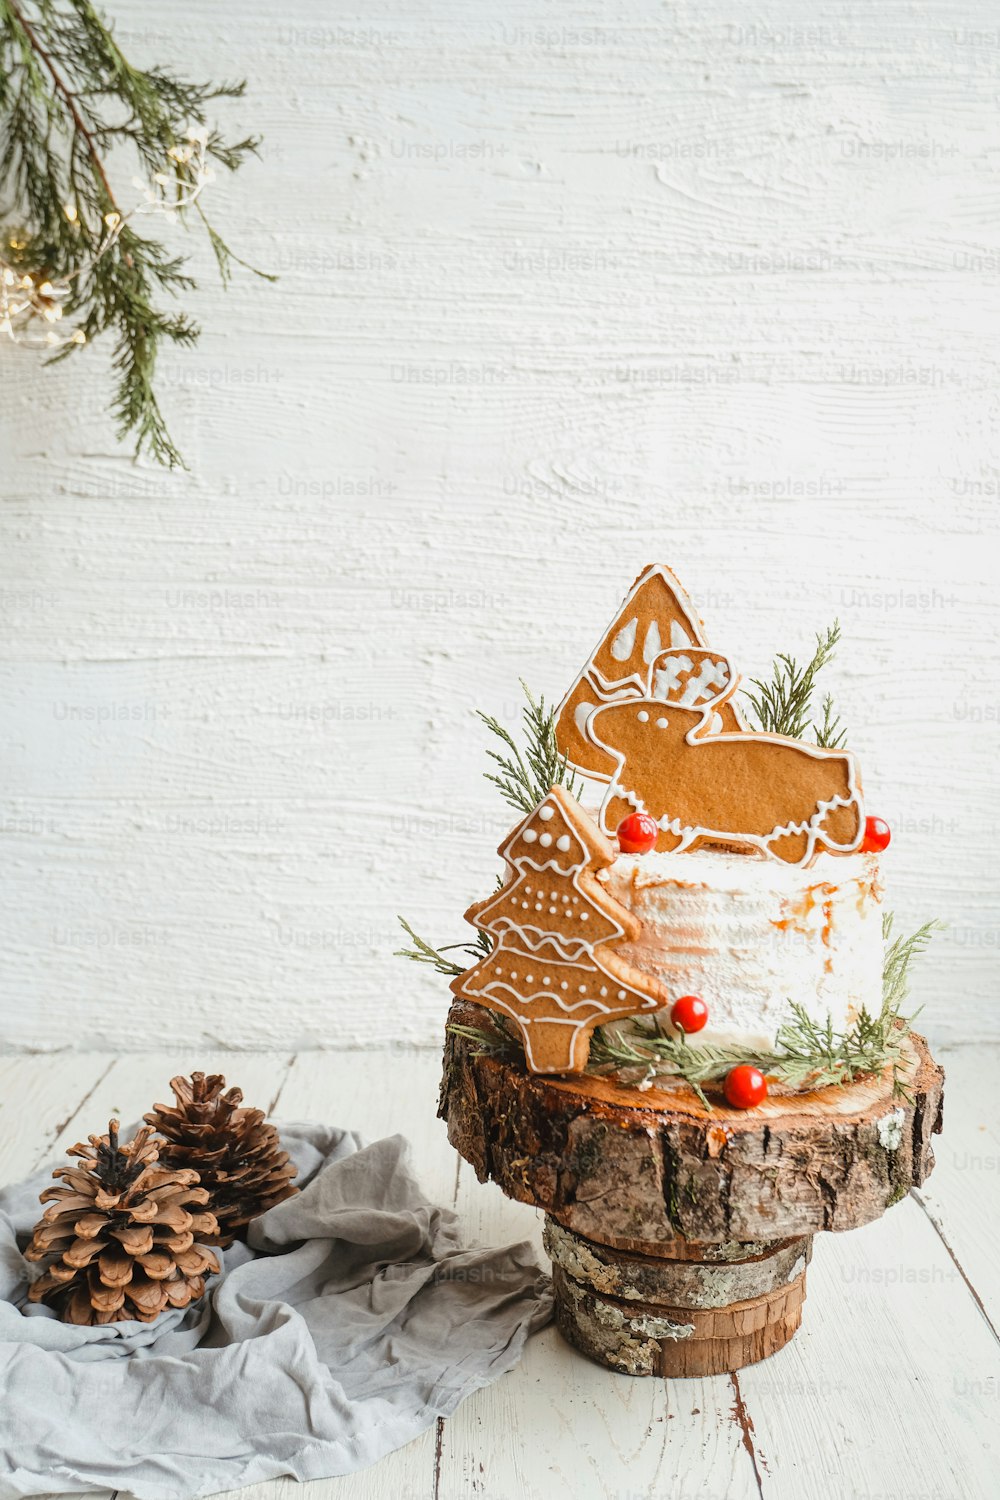 Un pastel de Navidad de pan de jengibre en un soporte de madera